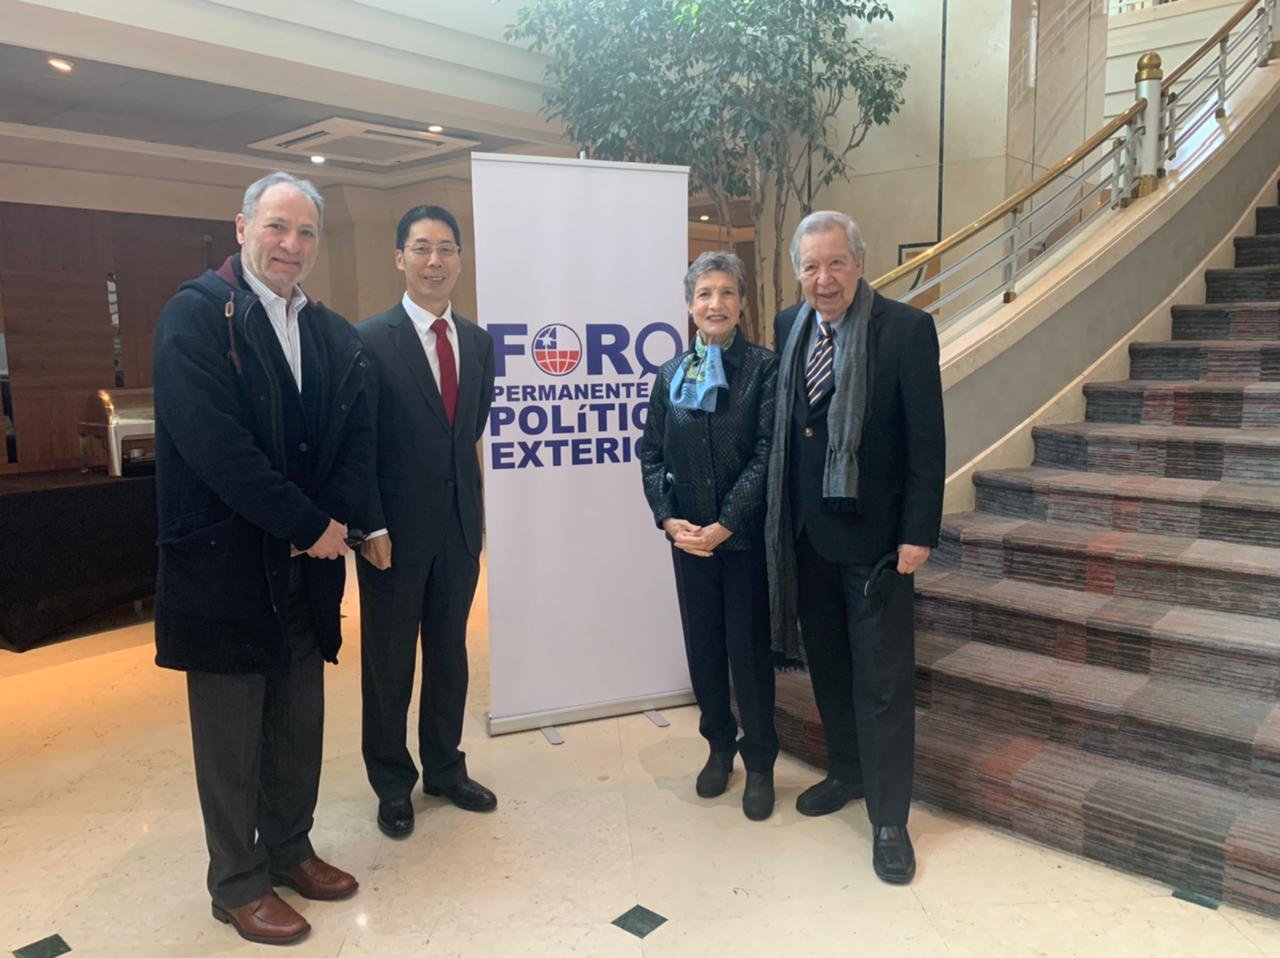 Marta Mauras y Fernando Reyes, panelistas del Foro Permanente de Política Exterior en el Seminario, más el Embajador chino y Rolando Drago.